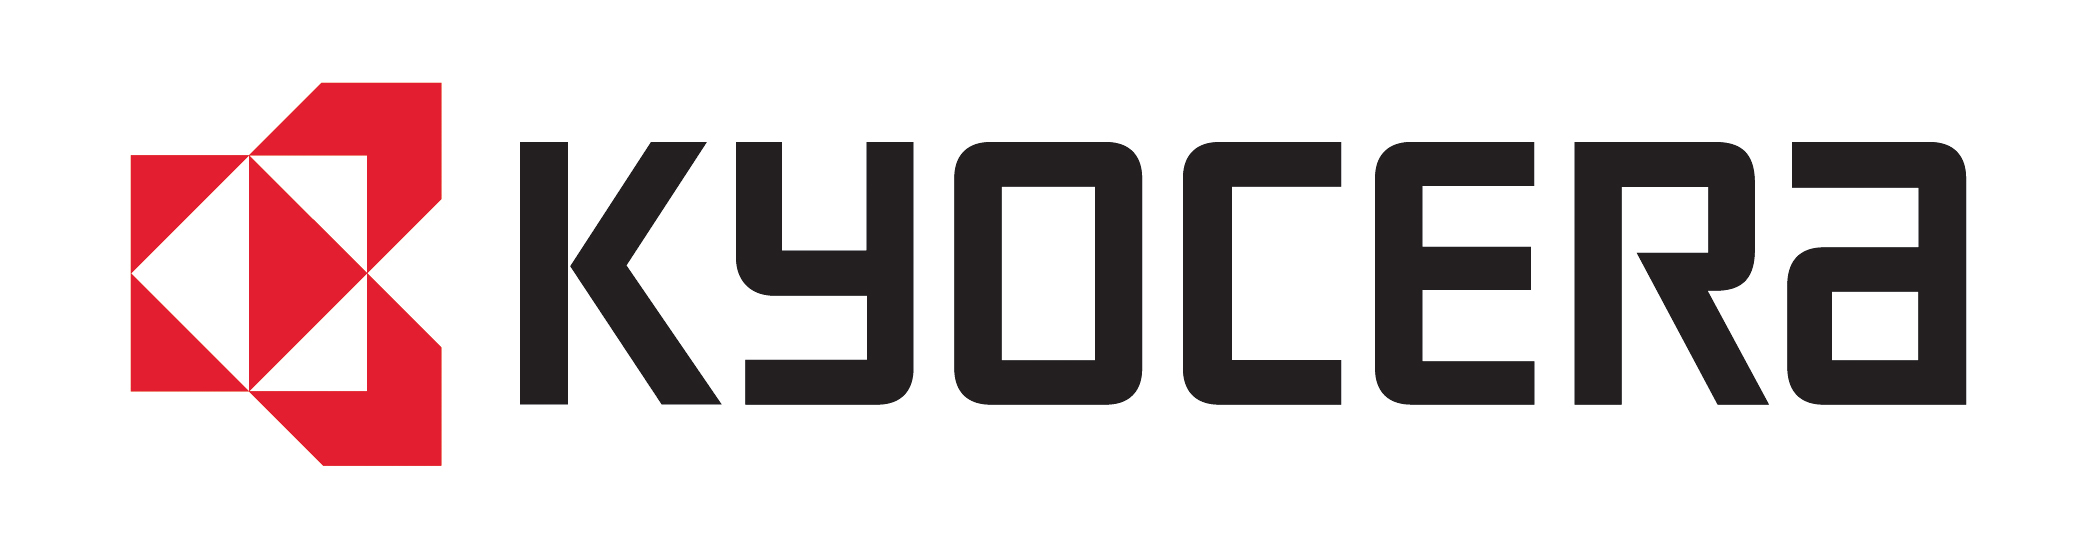 File:Kyocera logo.svg